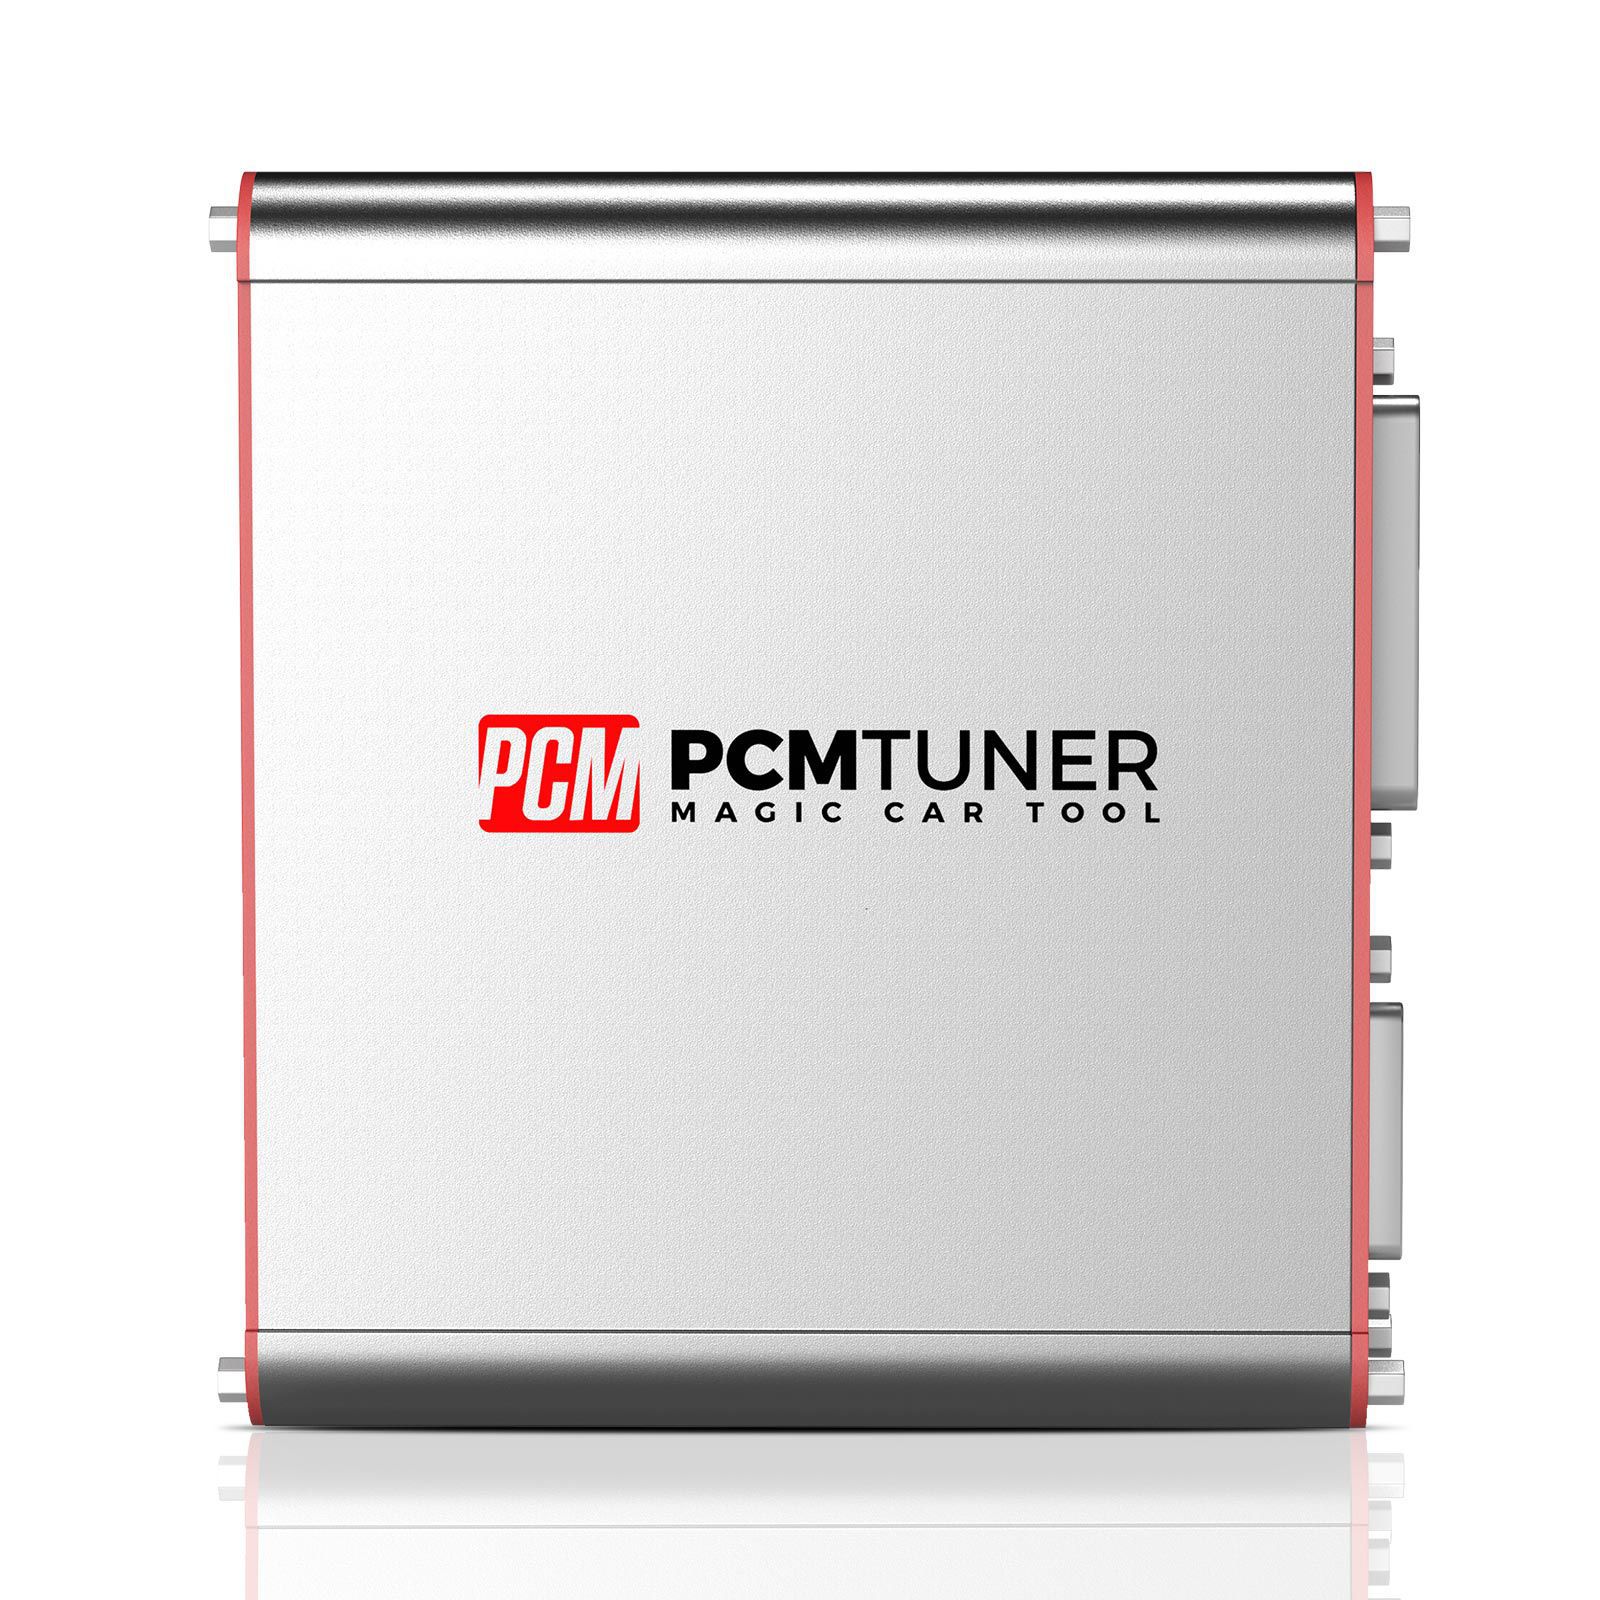 V1.27 PCMtuner ECU Programador com 67 Módulos Free Online Update Support Checksum Pinout Diagrama com Damaos Grátis para Usuários Obter Free Silicone Case